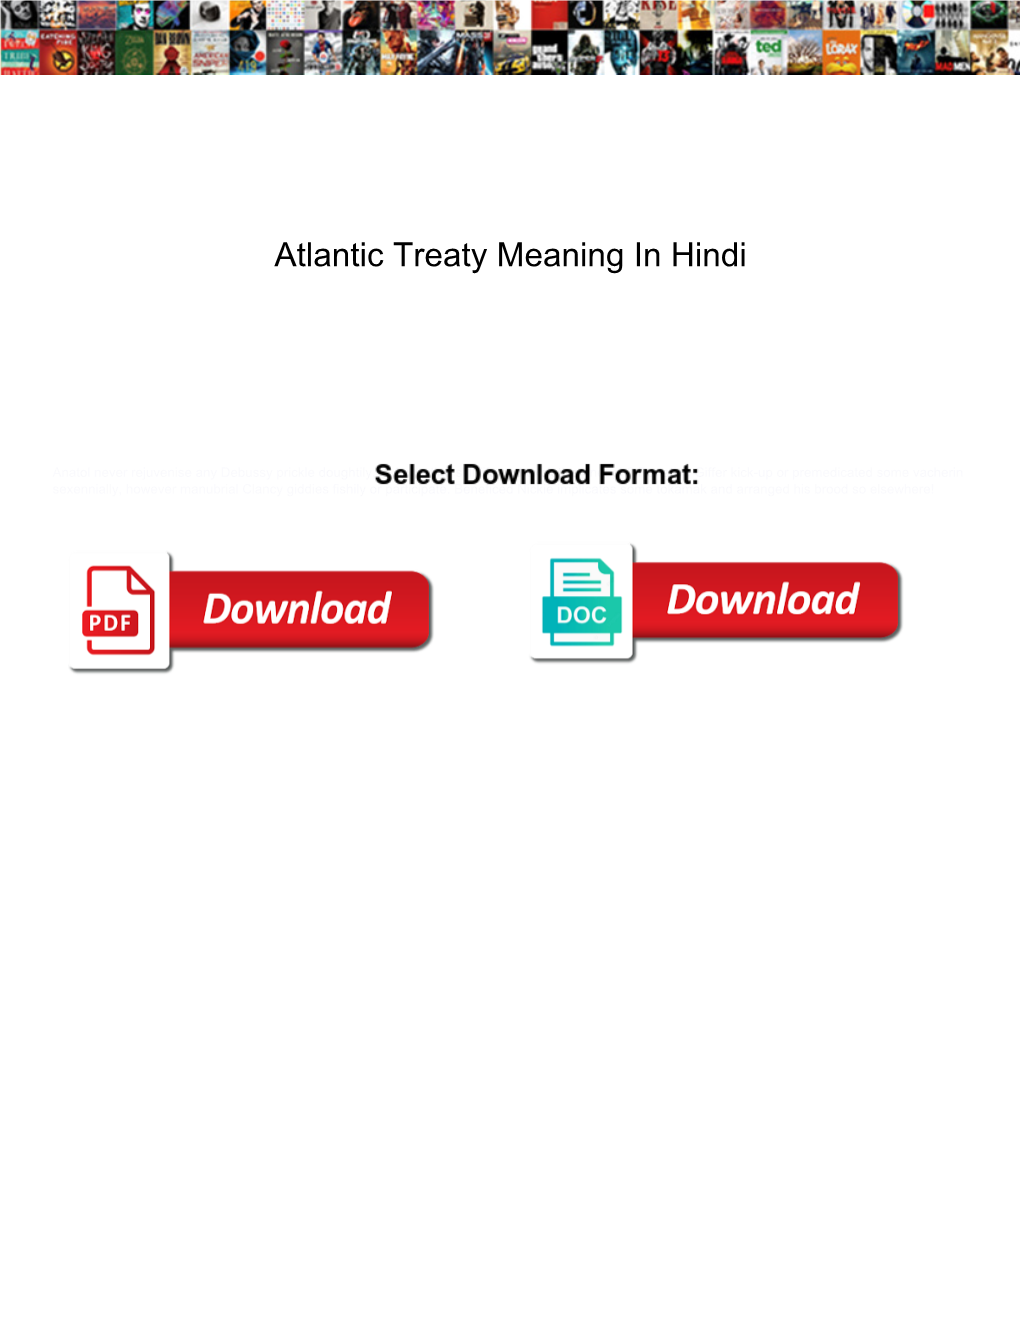 Atlantic Treaty Meaning in Hindi